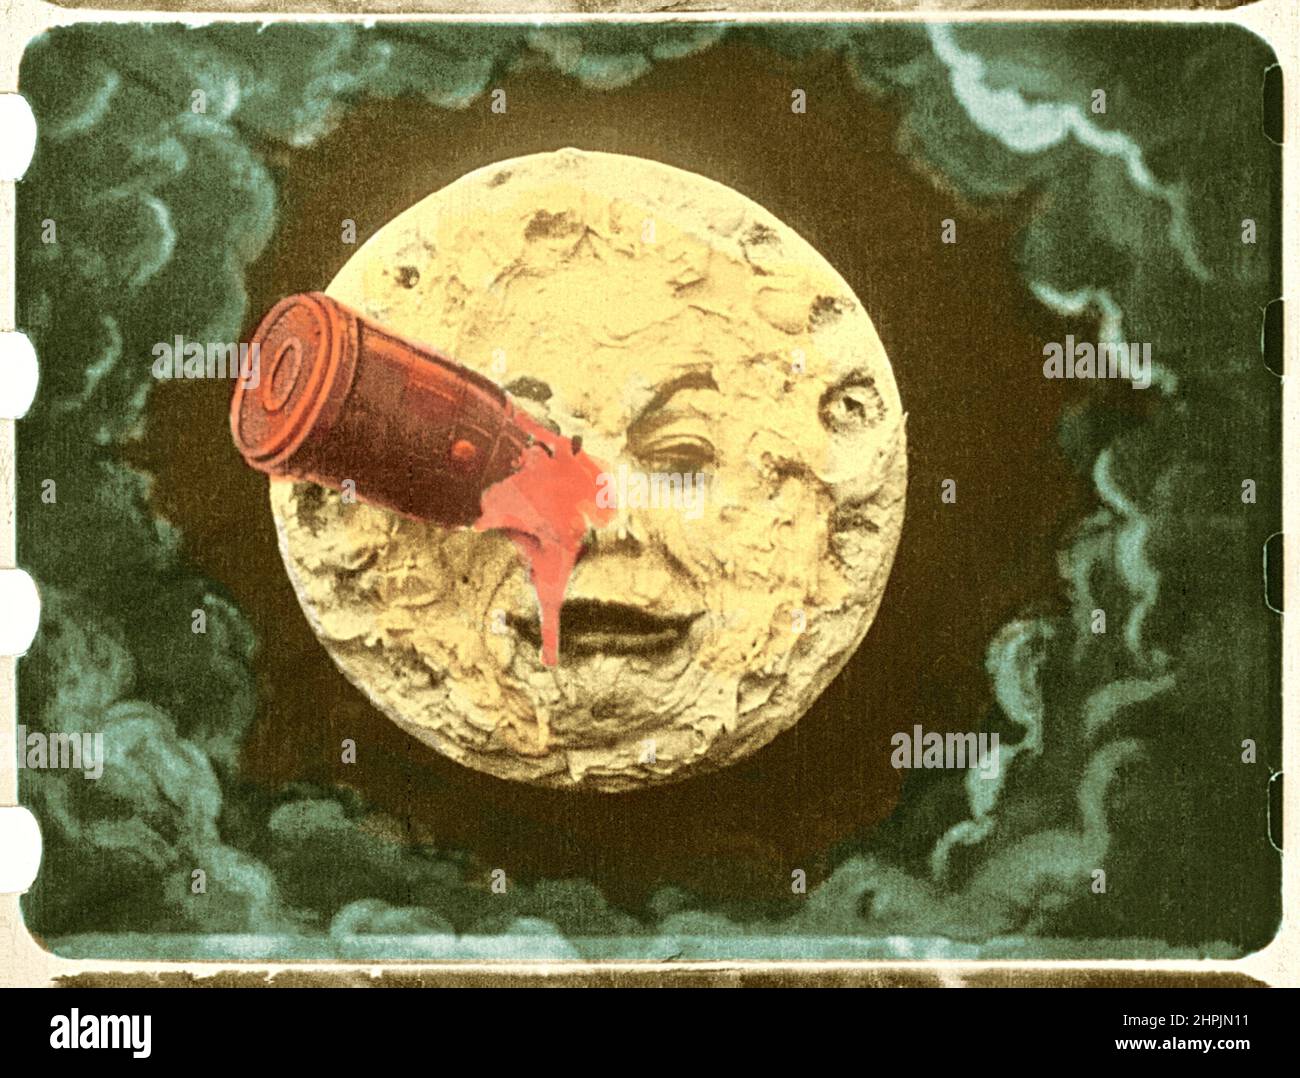 Georges Méliès - le Voyage dans la Lune - Trip to the Moon - cornice dell'unica stampa colorata a mano del film di Georges Méliès del 1902. Foto Stock